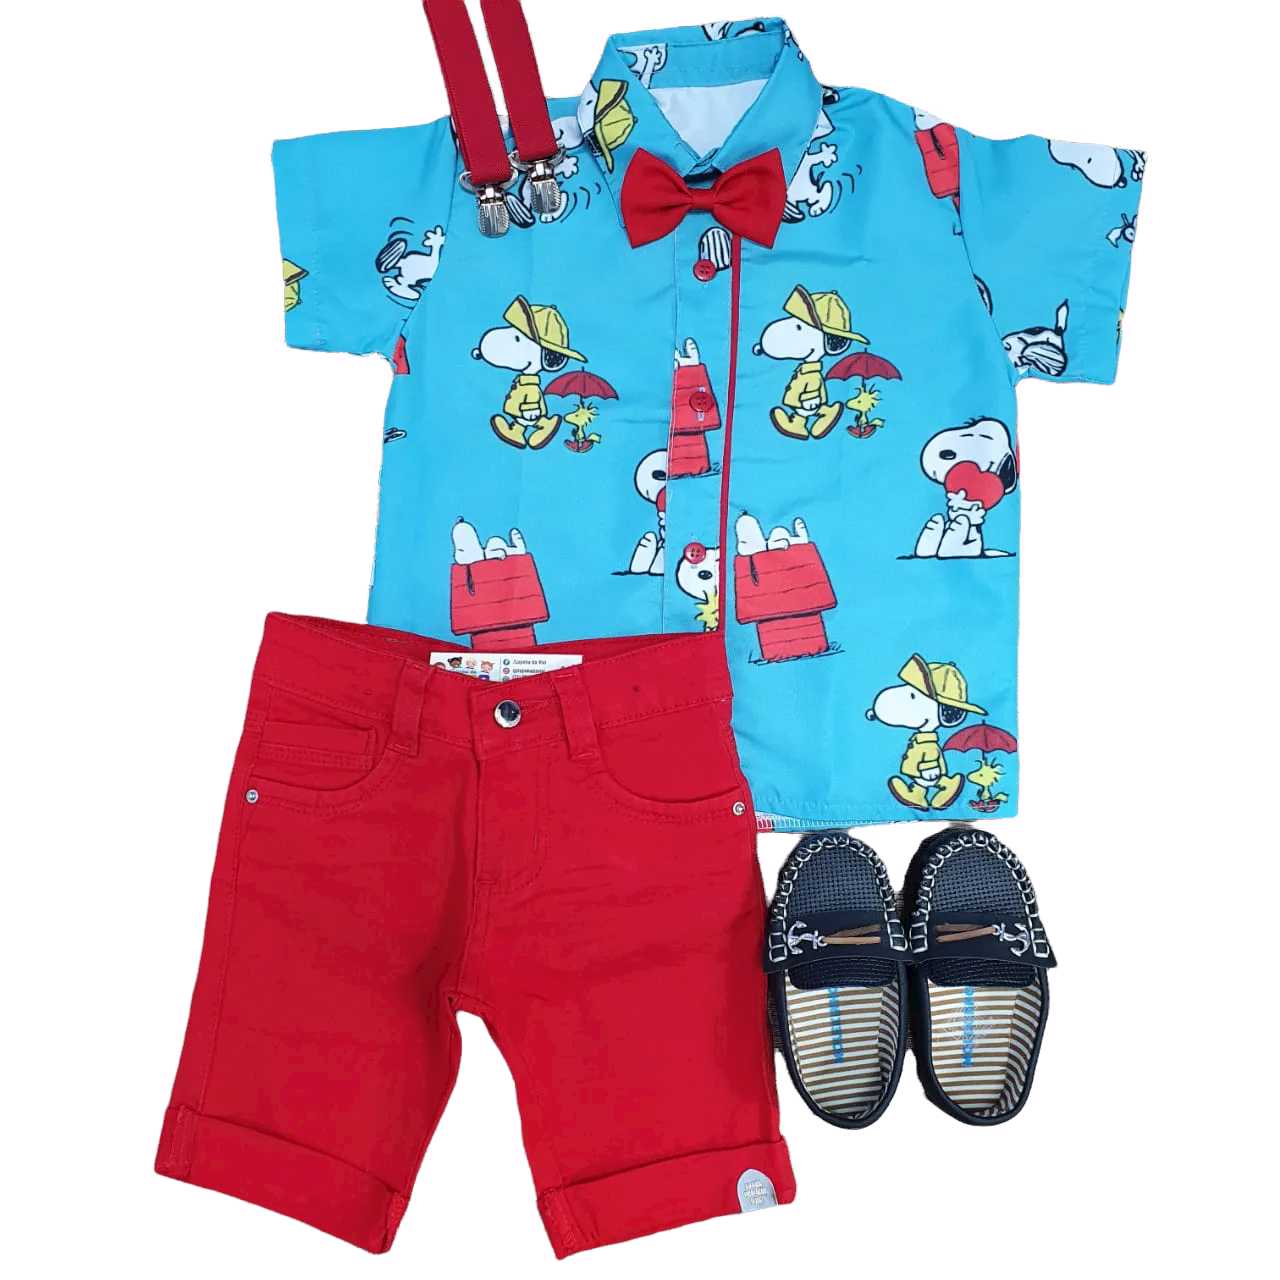 Bermuda Vermelha com Camisa Snoopy Infantil  - Lojinha da Vivi